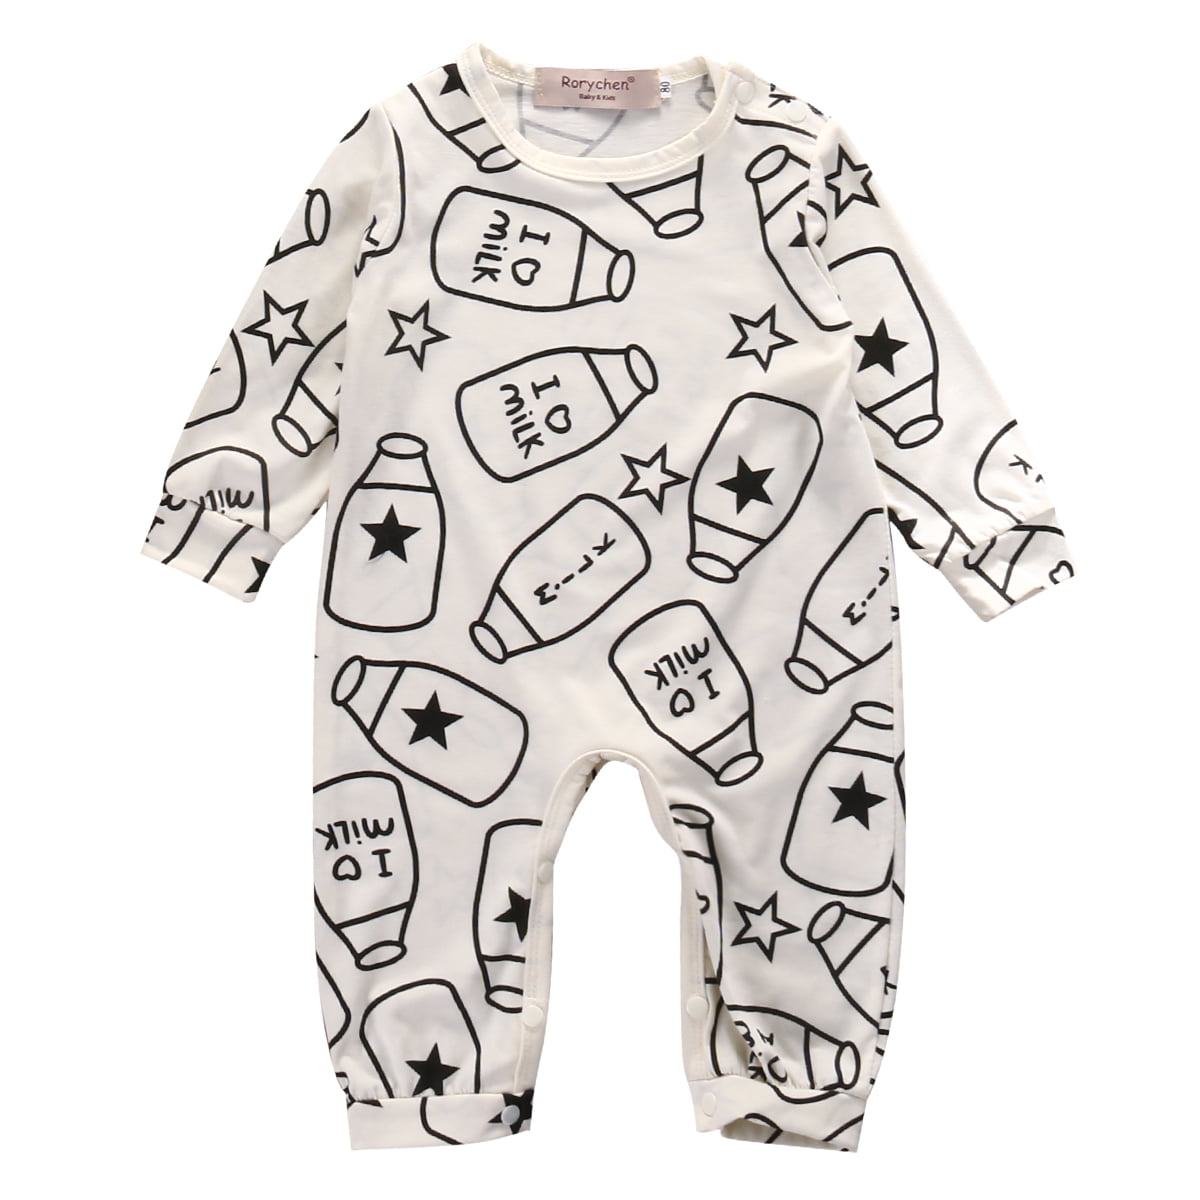 Newborn Infant Baby Boy Girl Cotton Romper Bodysuit Jumpsuit Clothes Outfit Set 